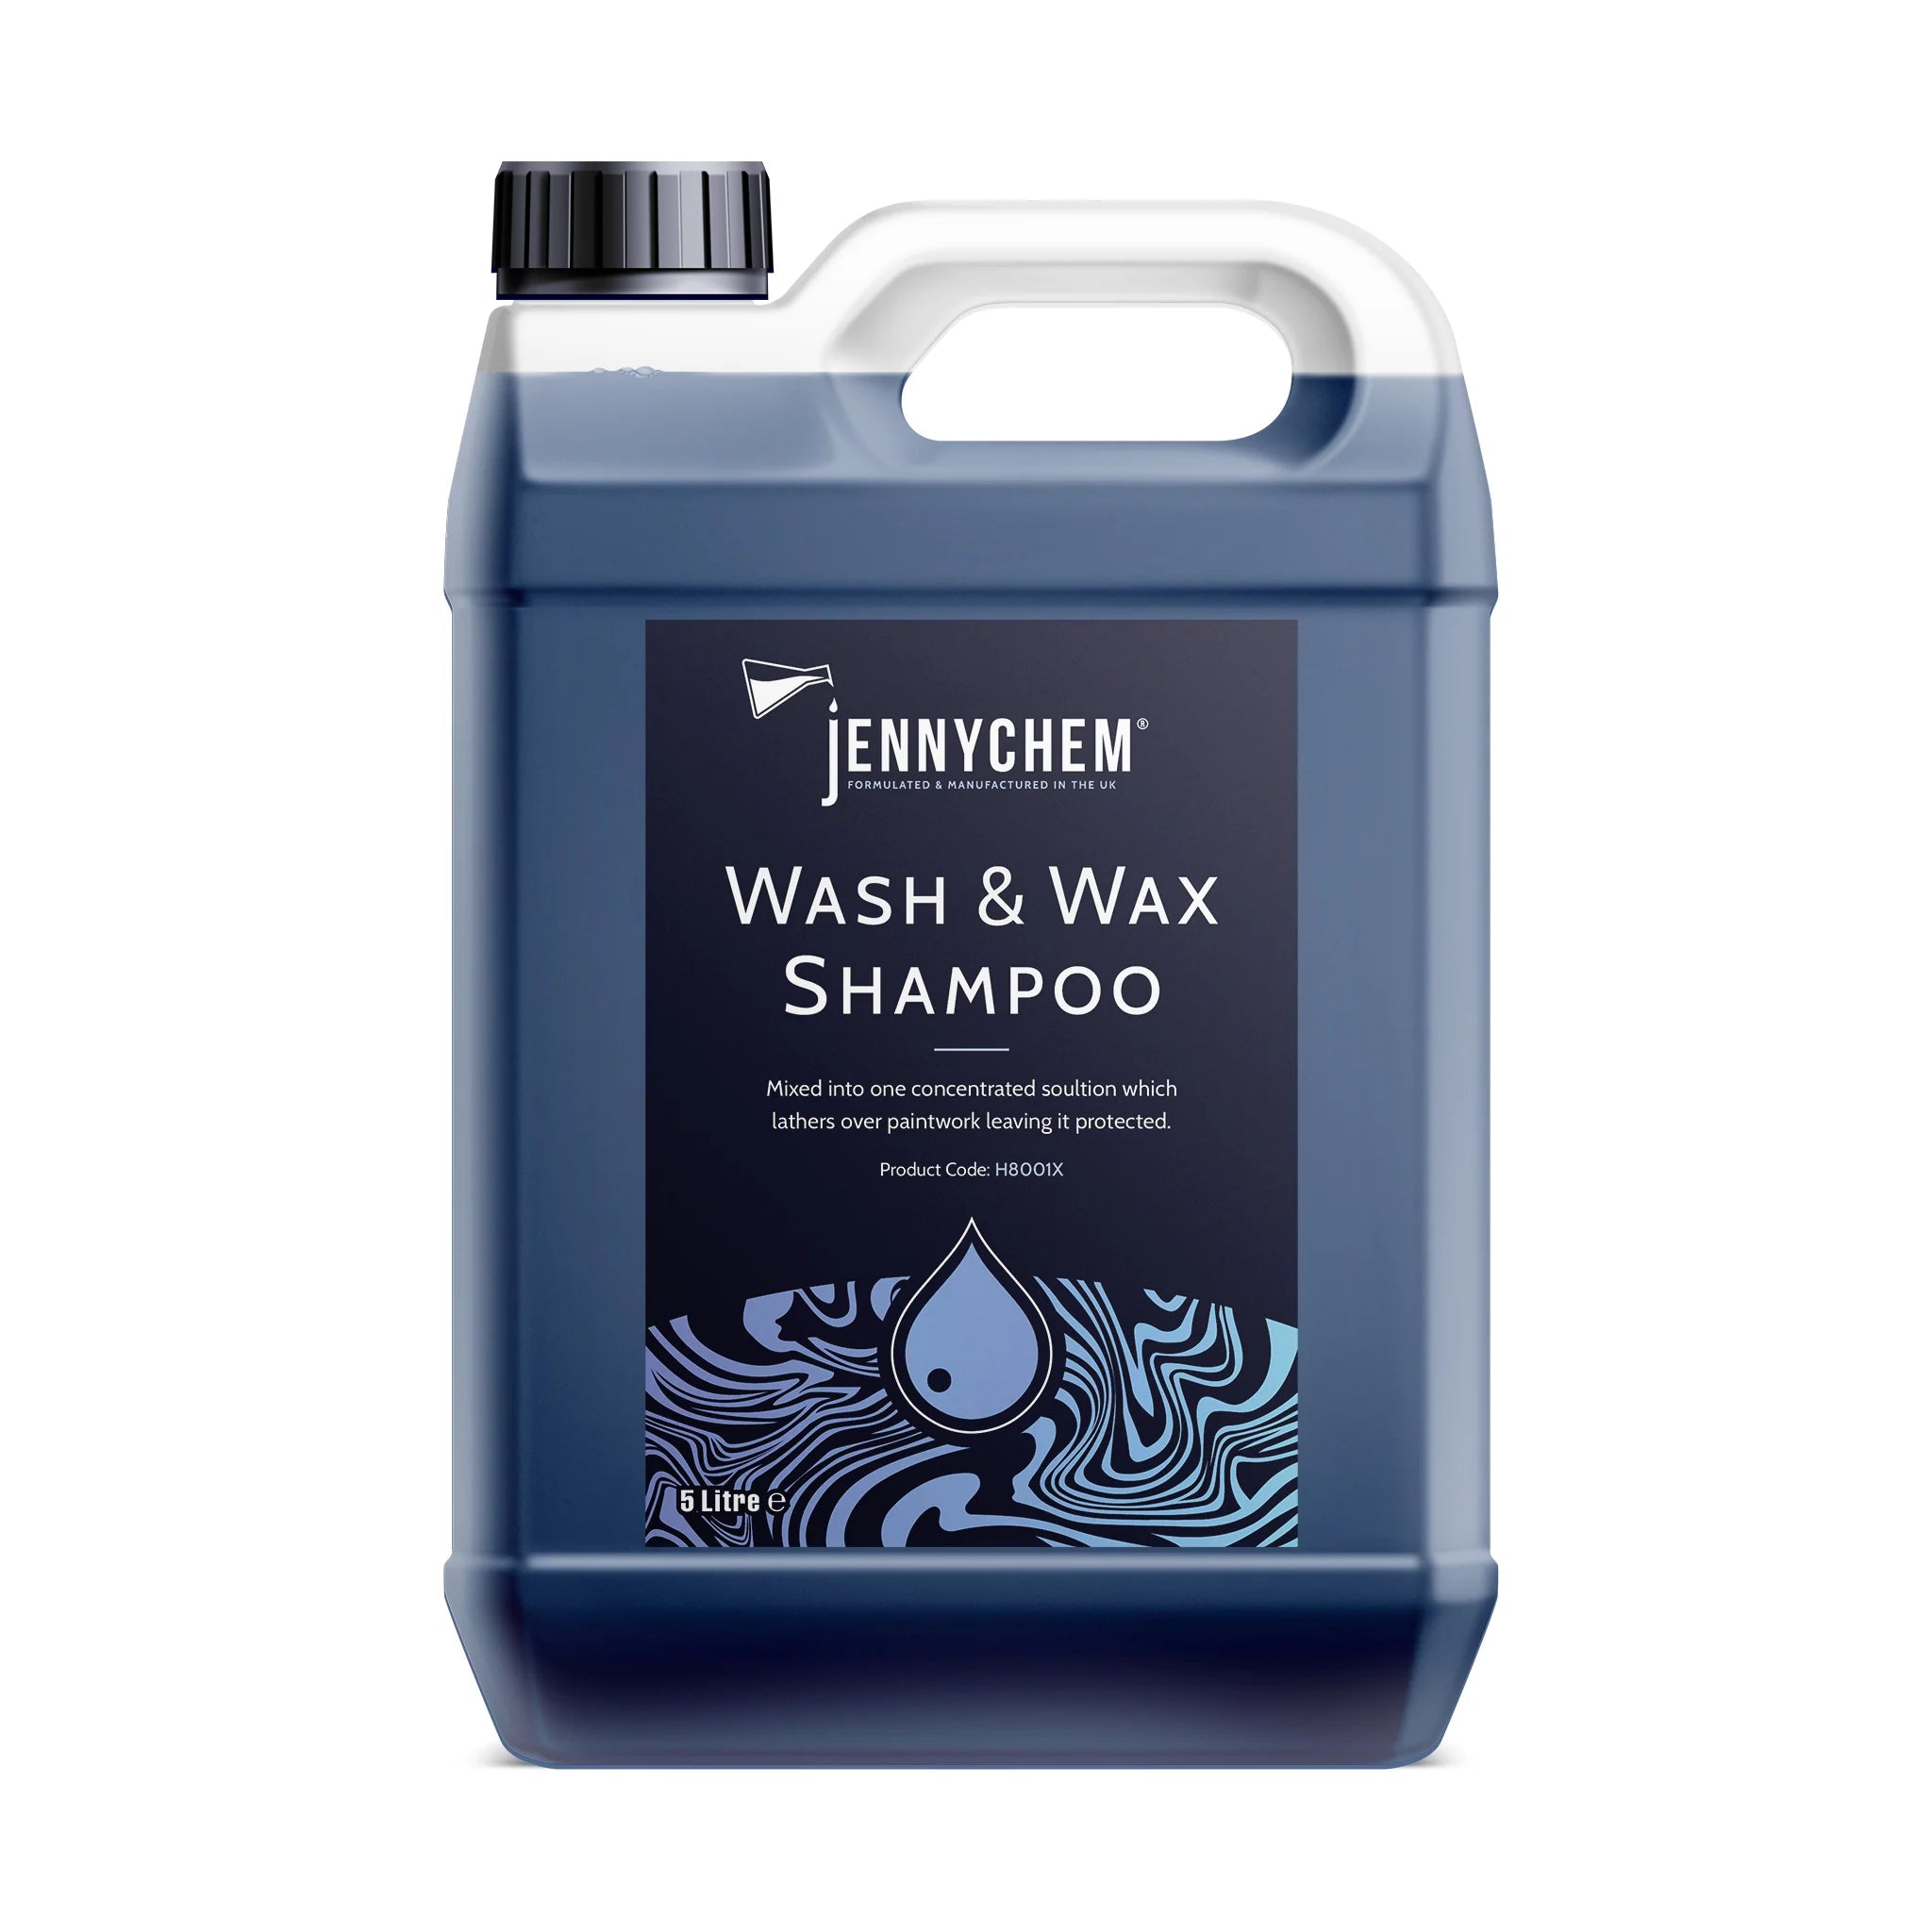 Jennychem Wash & Wax Shampoo 5L